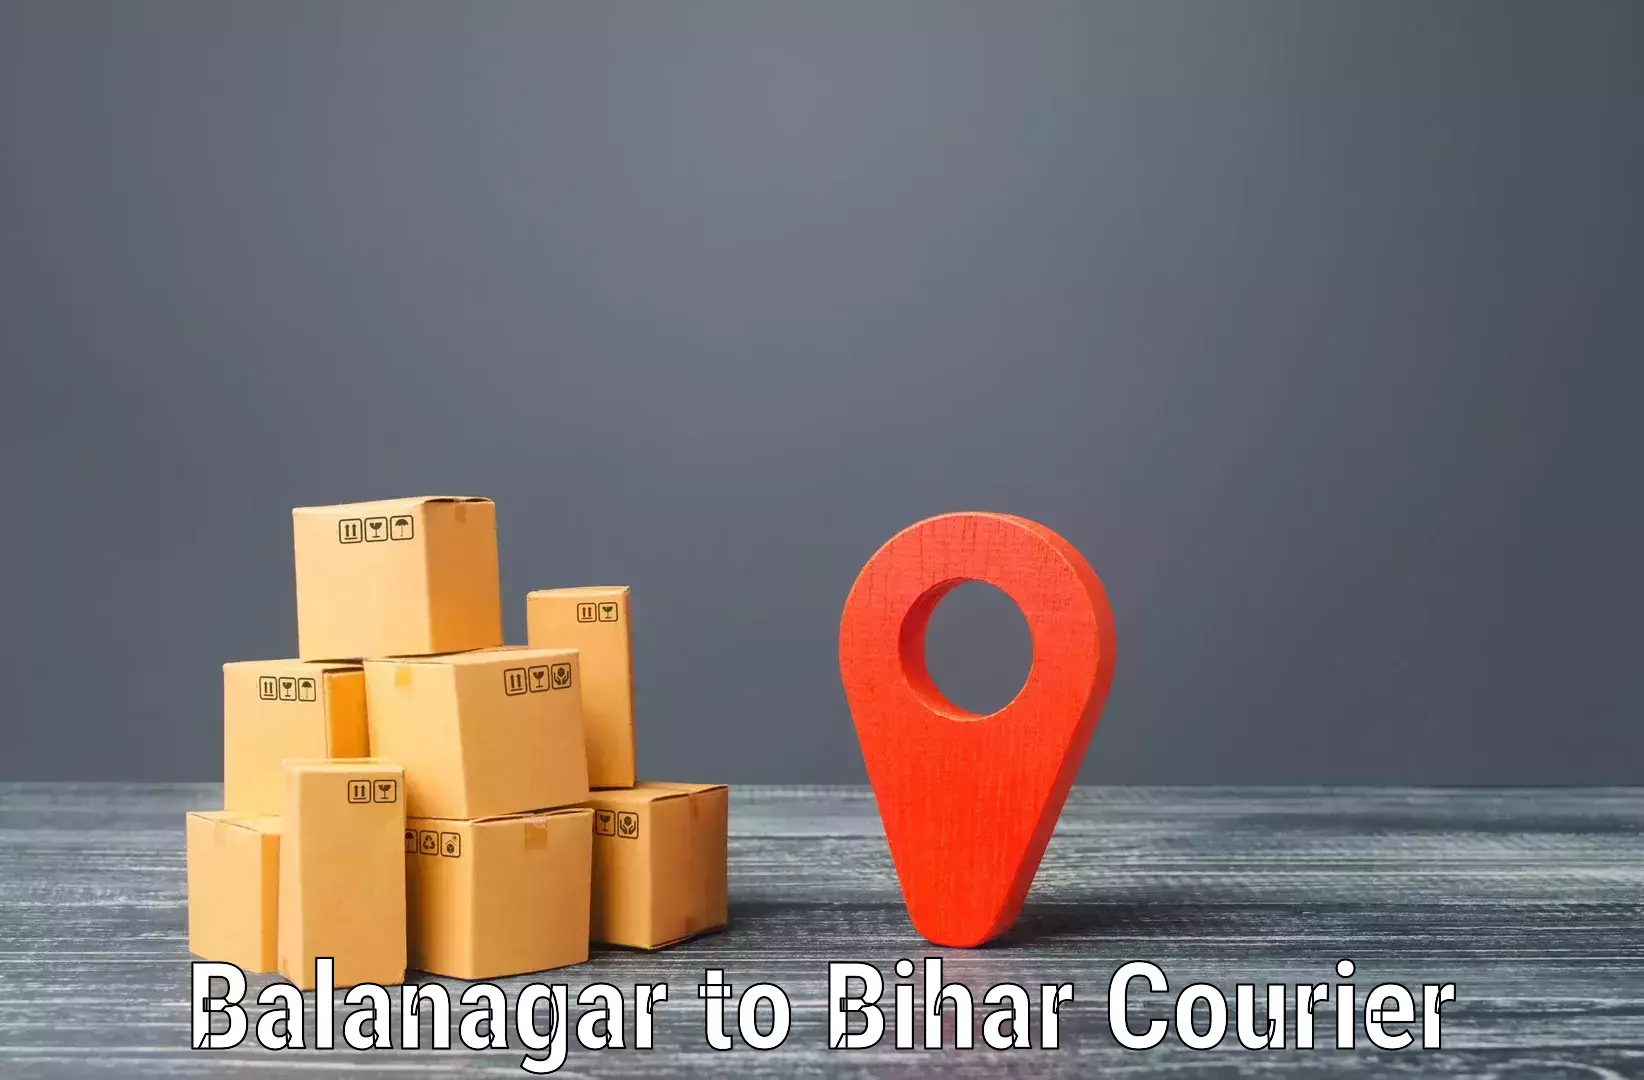 Digital courier platforms Balanagar to Mirganj